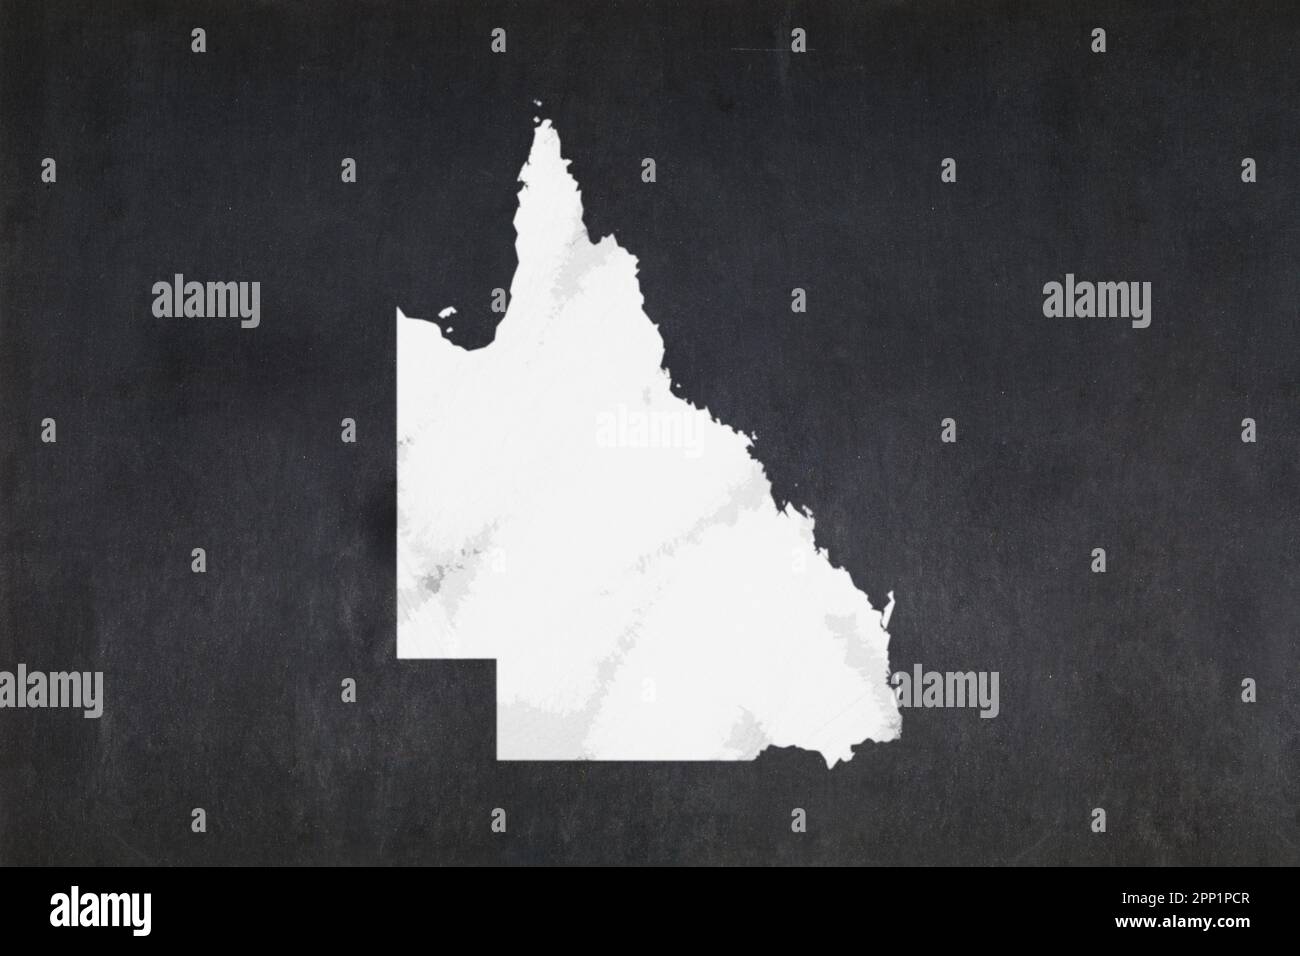 Tableau noir avec une carte de l'État du Queensland (Australie) dessinée au milieu. Banque D'Images